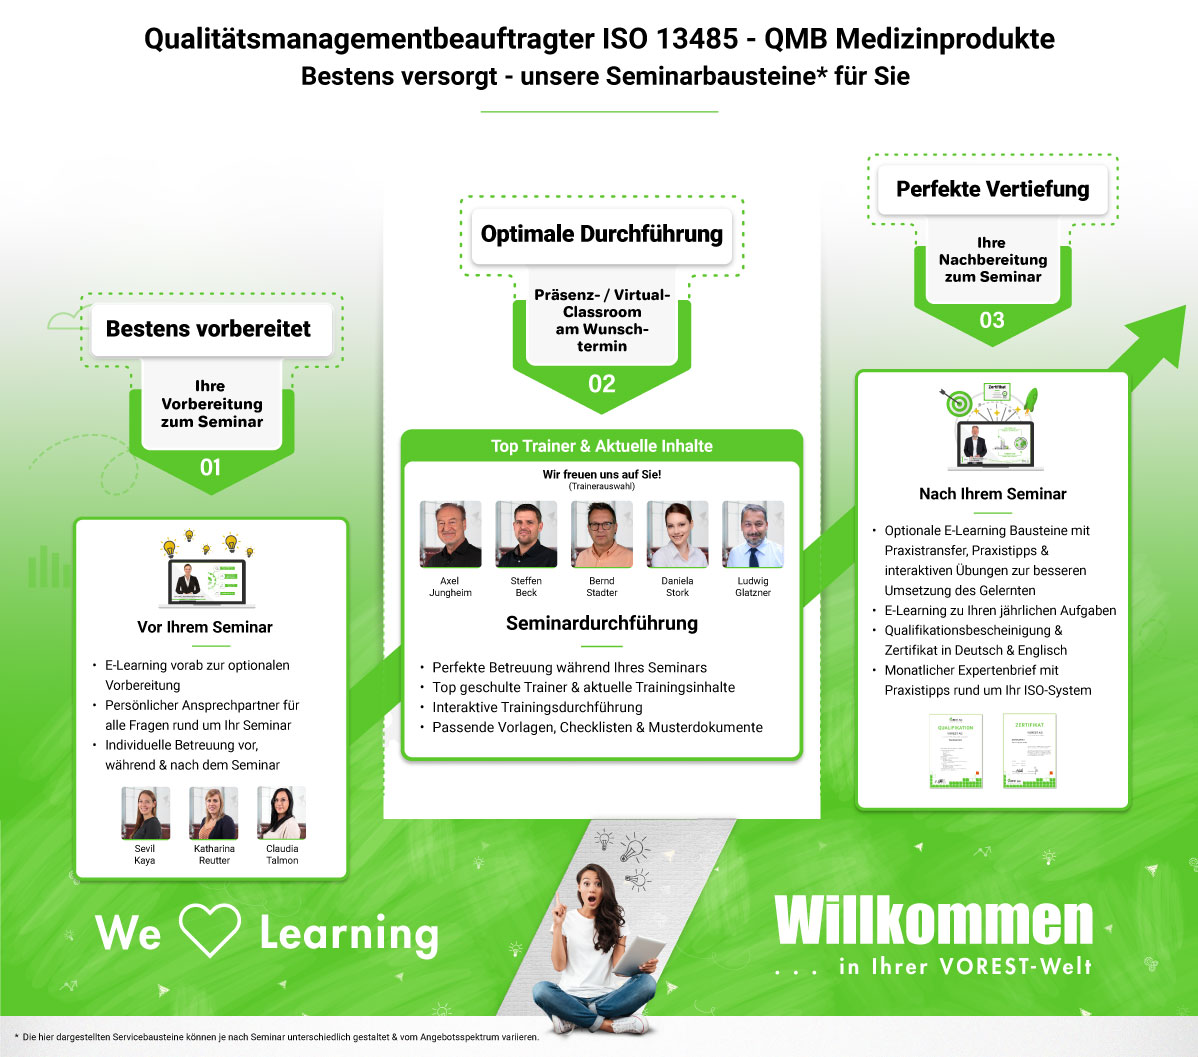 Qualitätsmanagementbeauftragter ISO 13485 - QMB Medizinprodukte